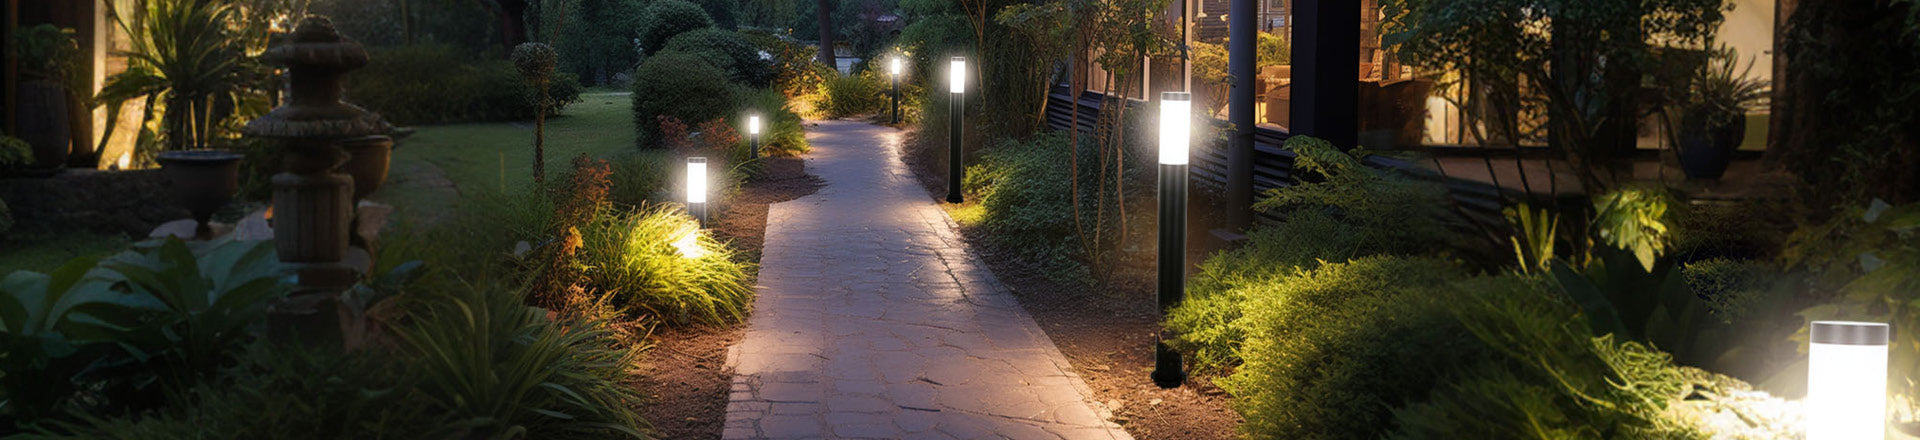 Outdoor Pathway Lights